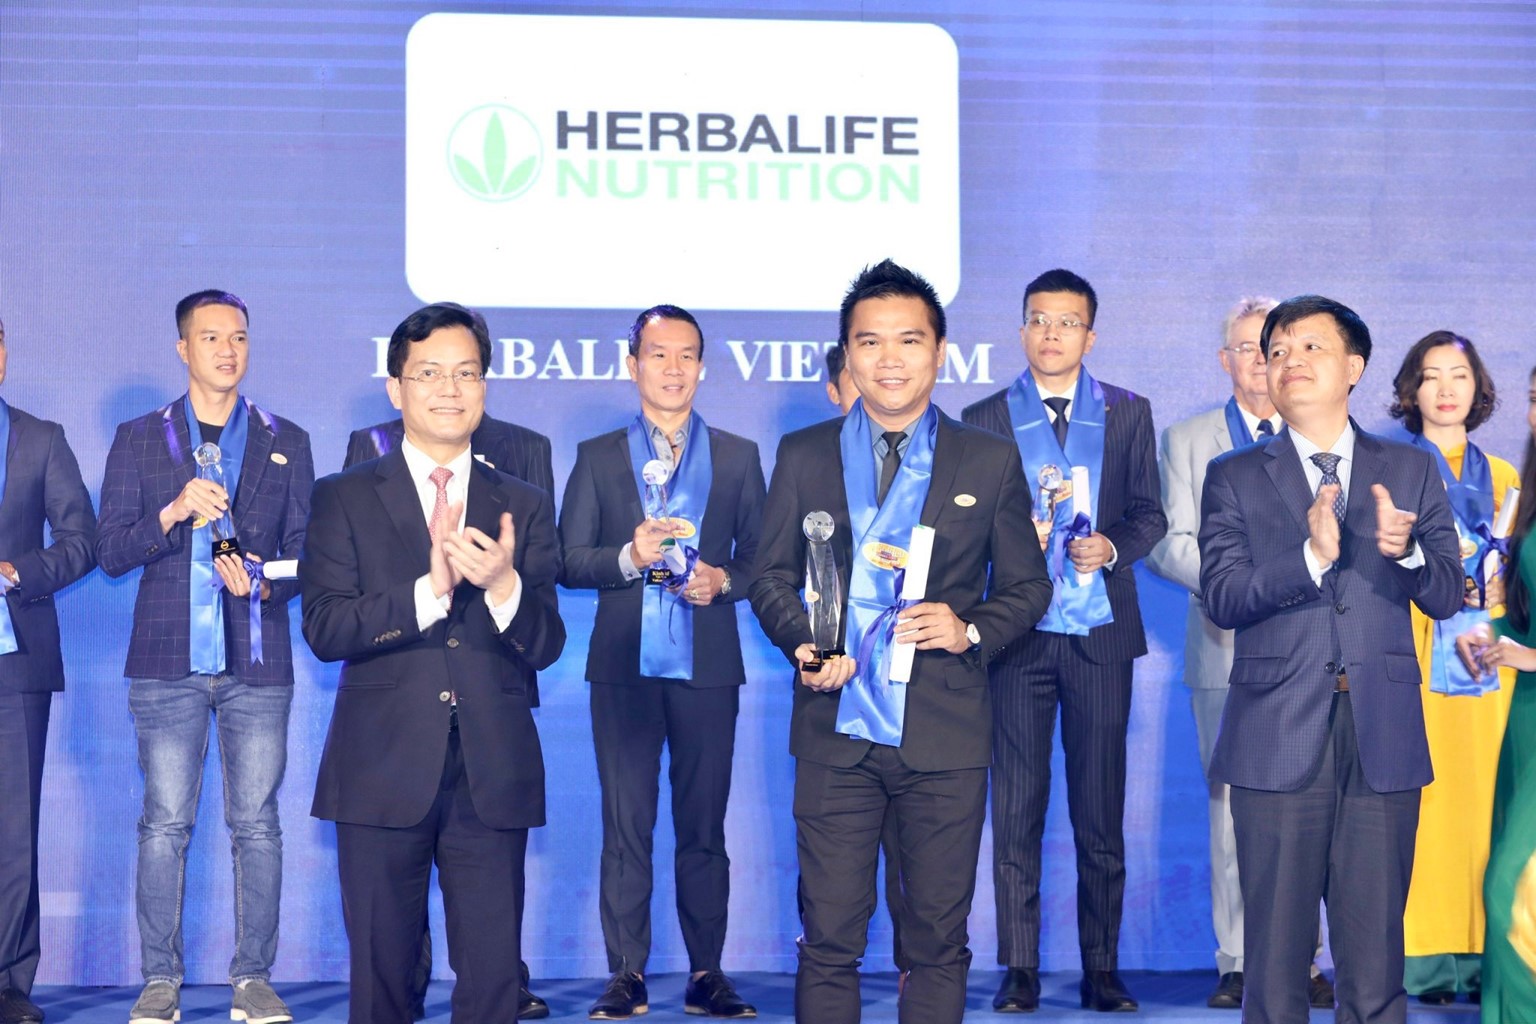 Herbalife Nutrition tiếp tục được trao danh hiệu “Thương hiệu thực phẩm bổ sung dinh dưỡng hàng đầu” - Ảnh 1.